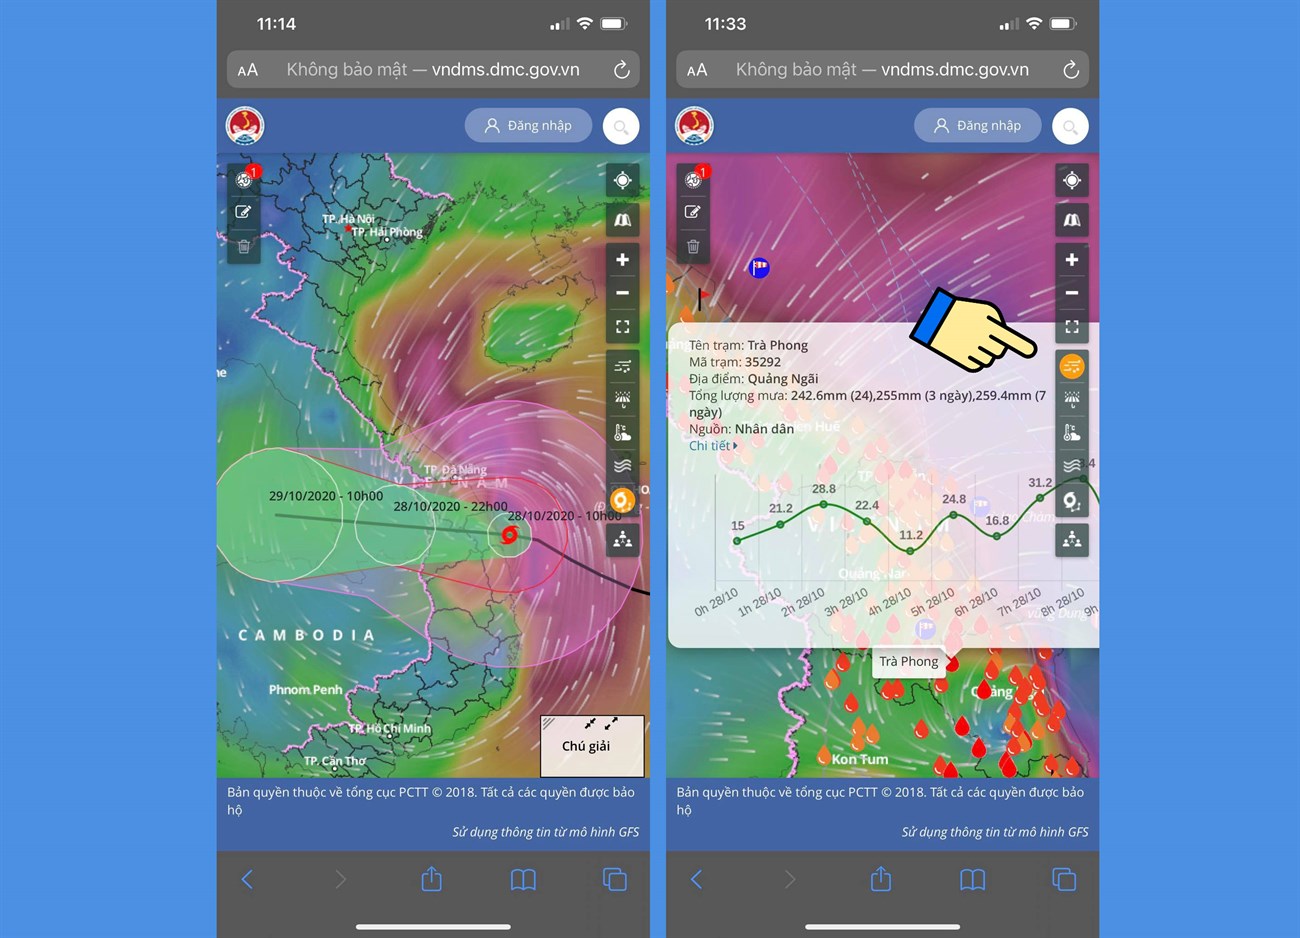 Cách xem bản đồ dự báo thời tiết, bão lũ, thiên tai Việt Nam trực tiếp qua vệ tinh > Cách xem bản đồ cảnh báo thiên tai